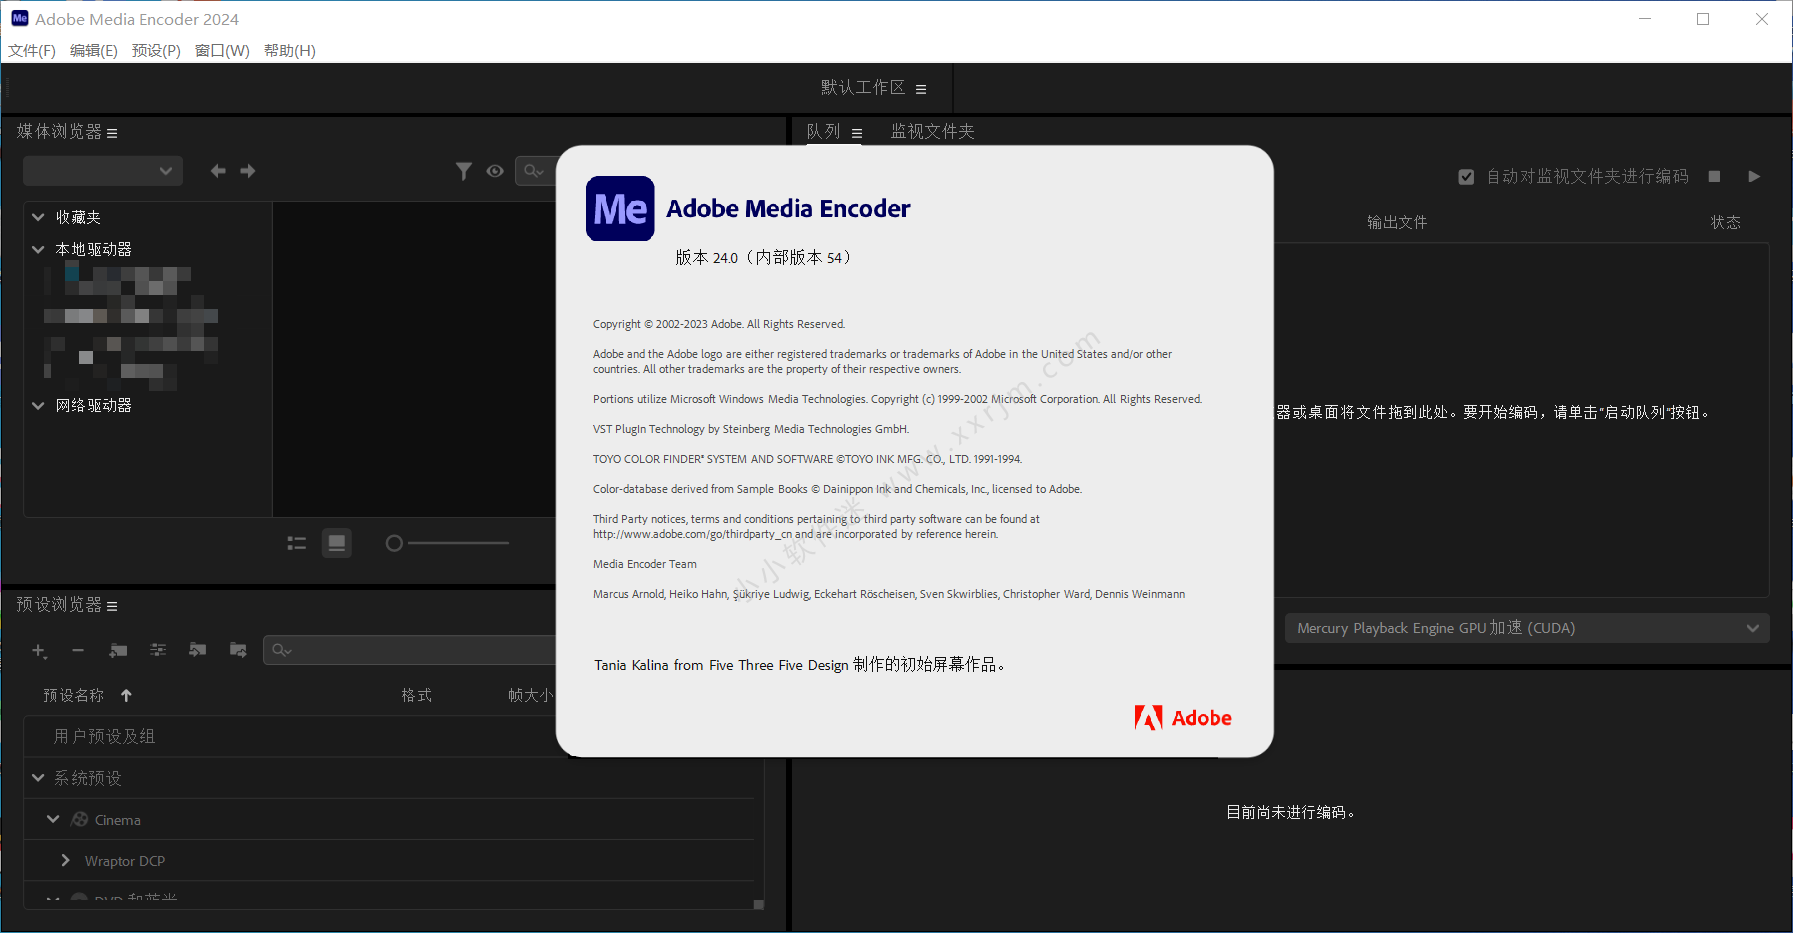 Adobe Media Encoder 2024 v24.0.0.54 free